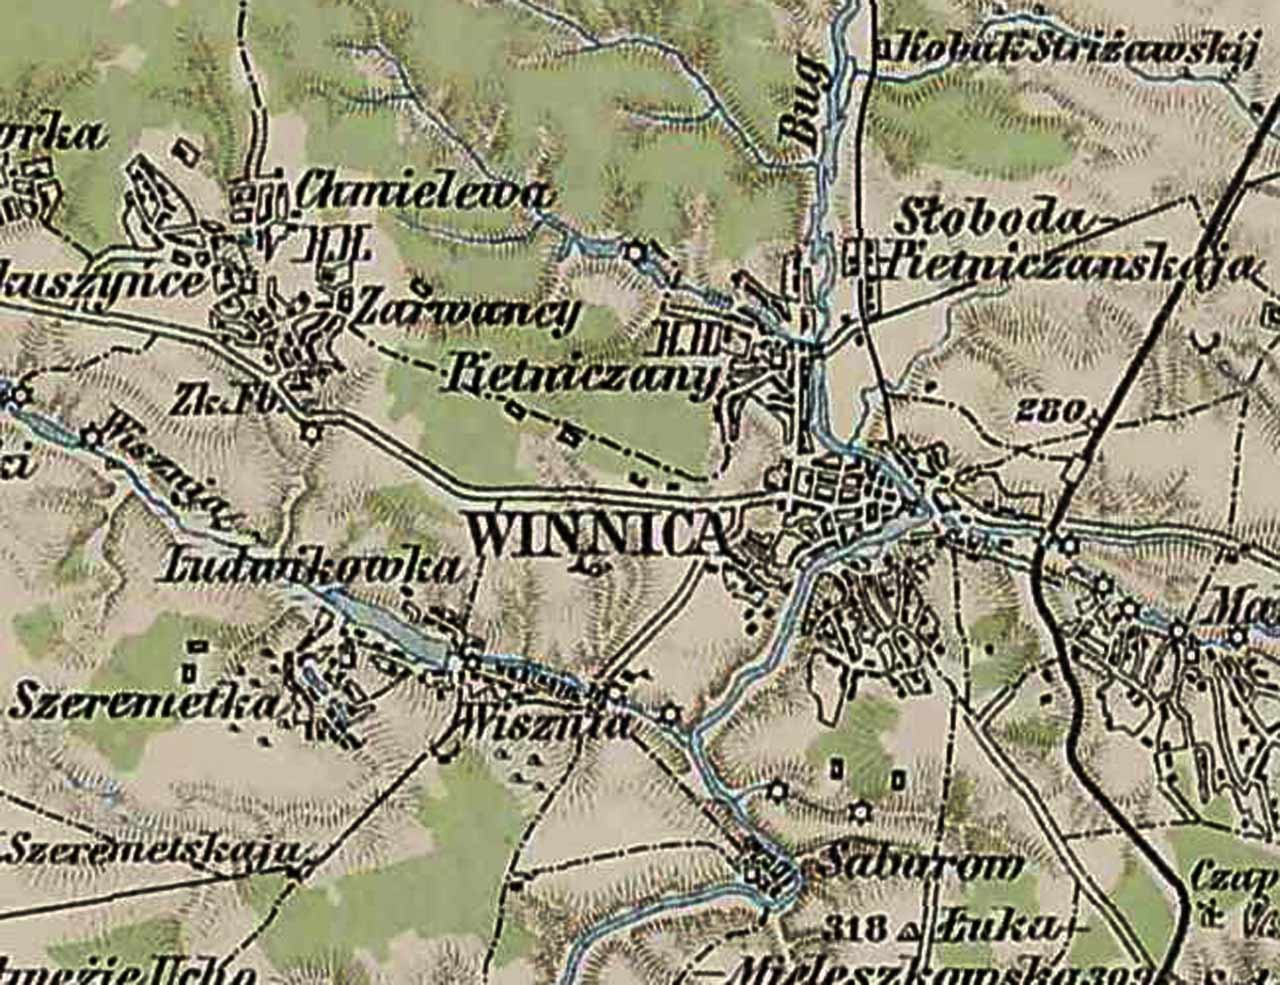 Mapa Winnicy i okolic z 1910 roku